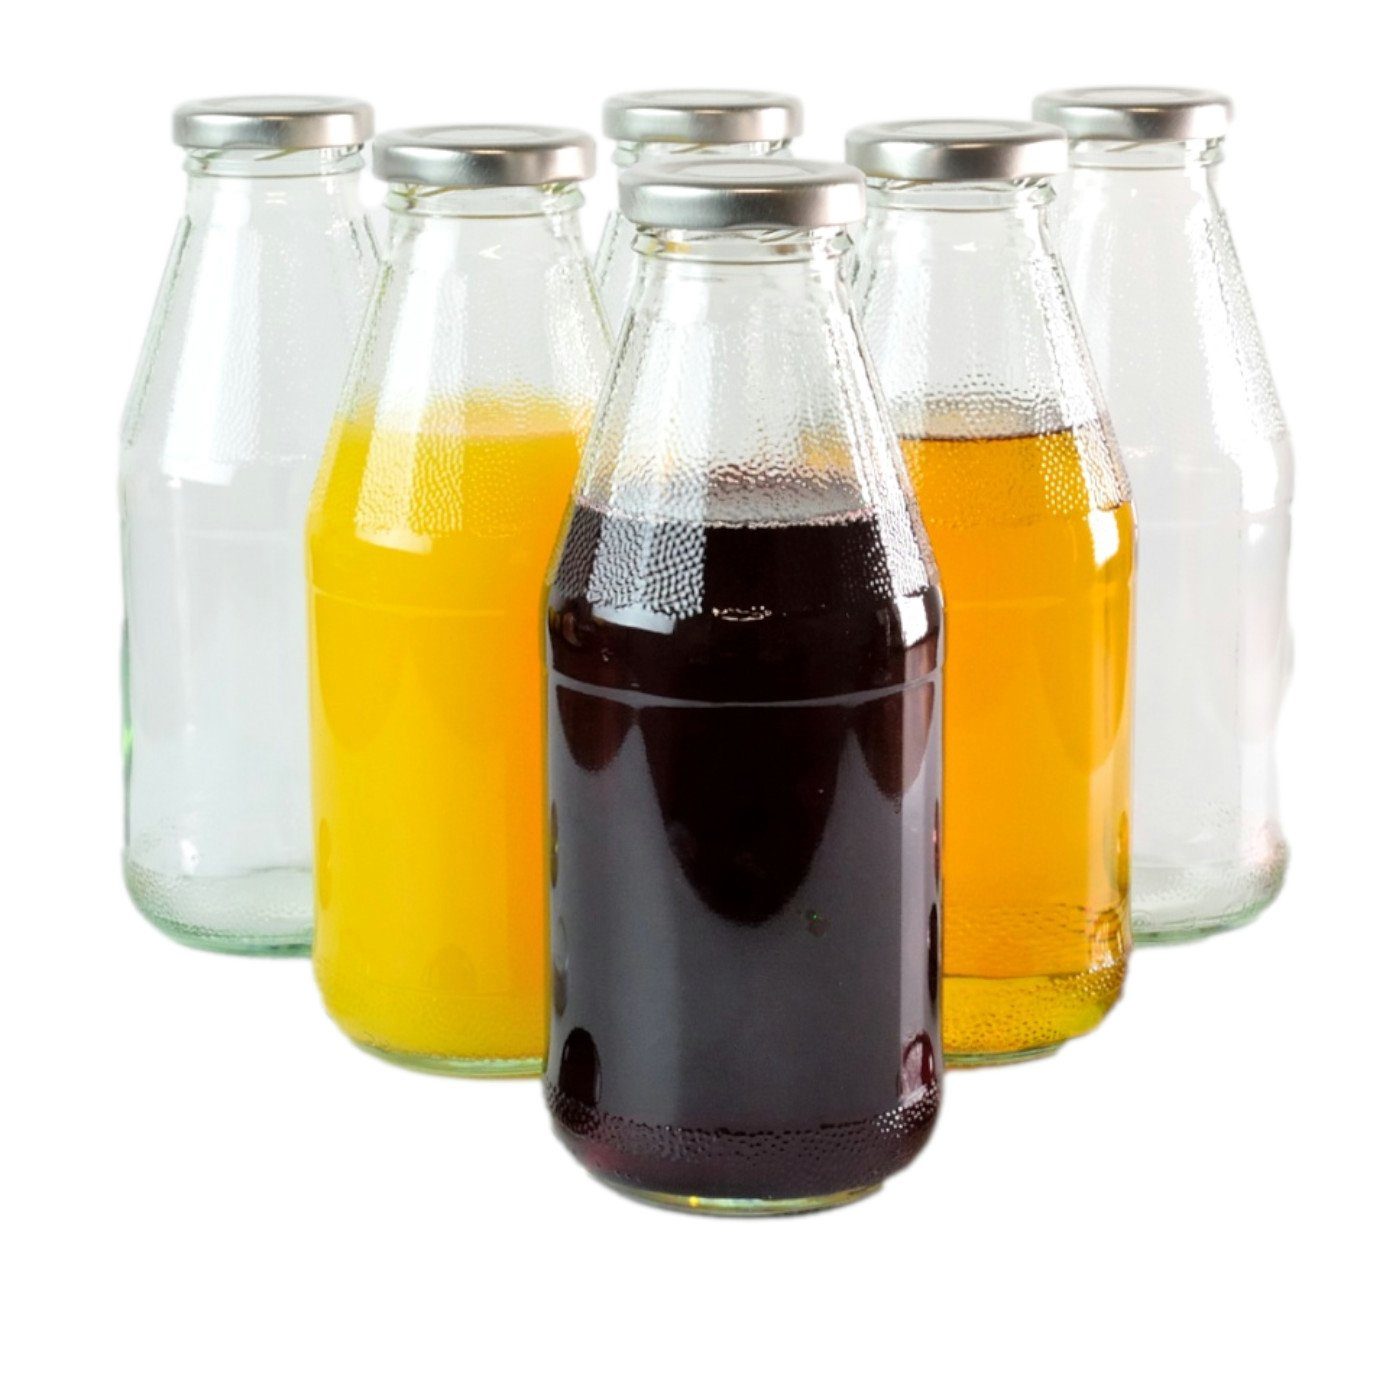 gouveo Trinkflasche Saftflaschen 500 ml mit Schraub-Deckel - Kleine Flasche 0,5 l, 6er Set, silberfarben